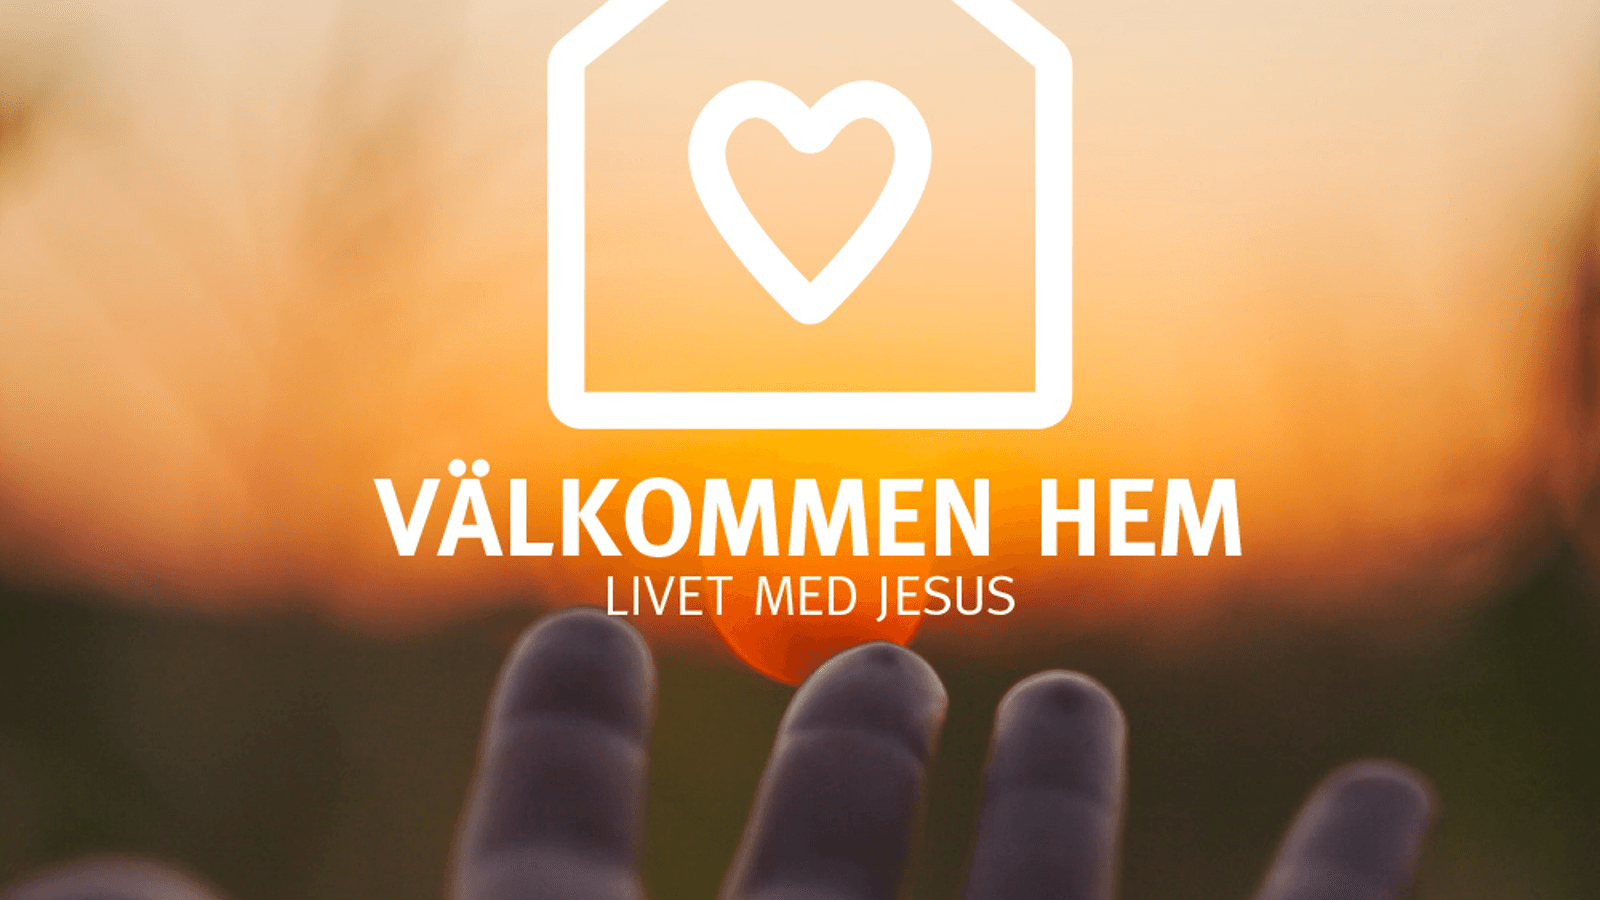 Välkommen hem, Livet med Jesus. Vision 2020-2025 för Frälsningsarmén i Sverige